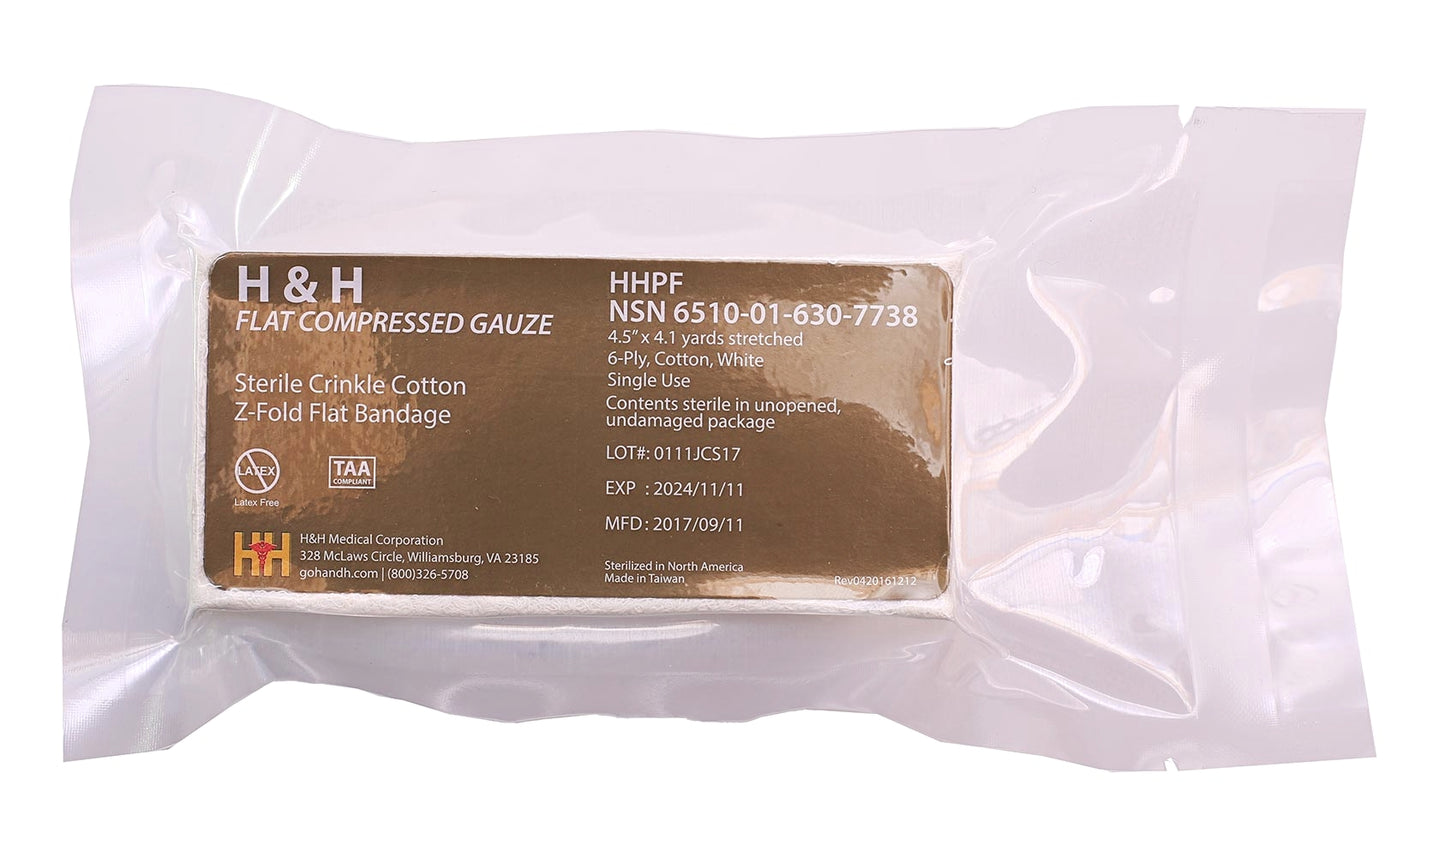 H&H Flat Compressed Gauze - V Development Group edc glock shirt carry aiwb appendix belt rmt tourniquet